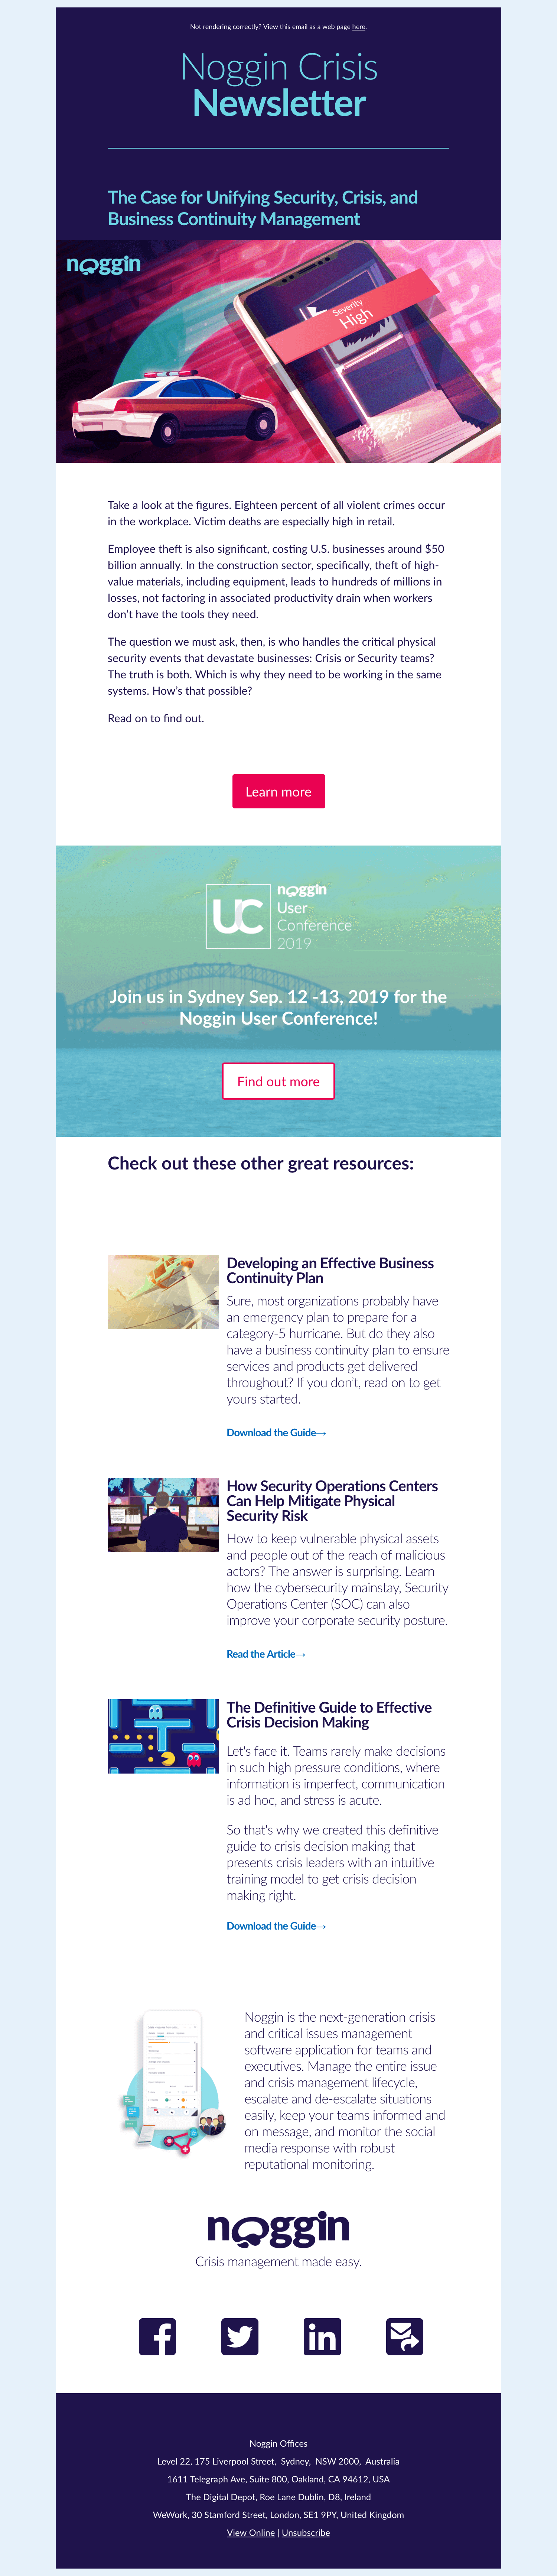 Noggin Crisis Newsletter